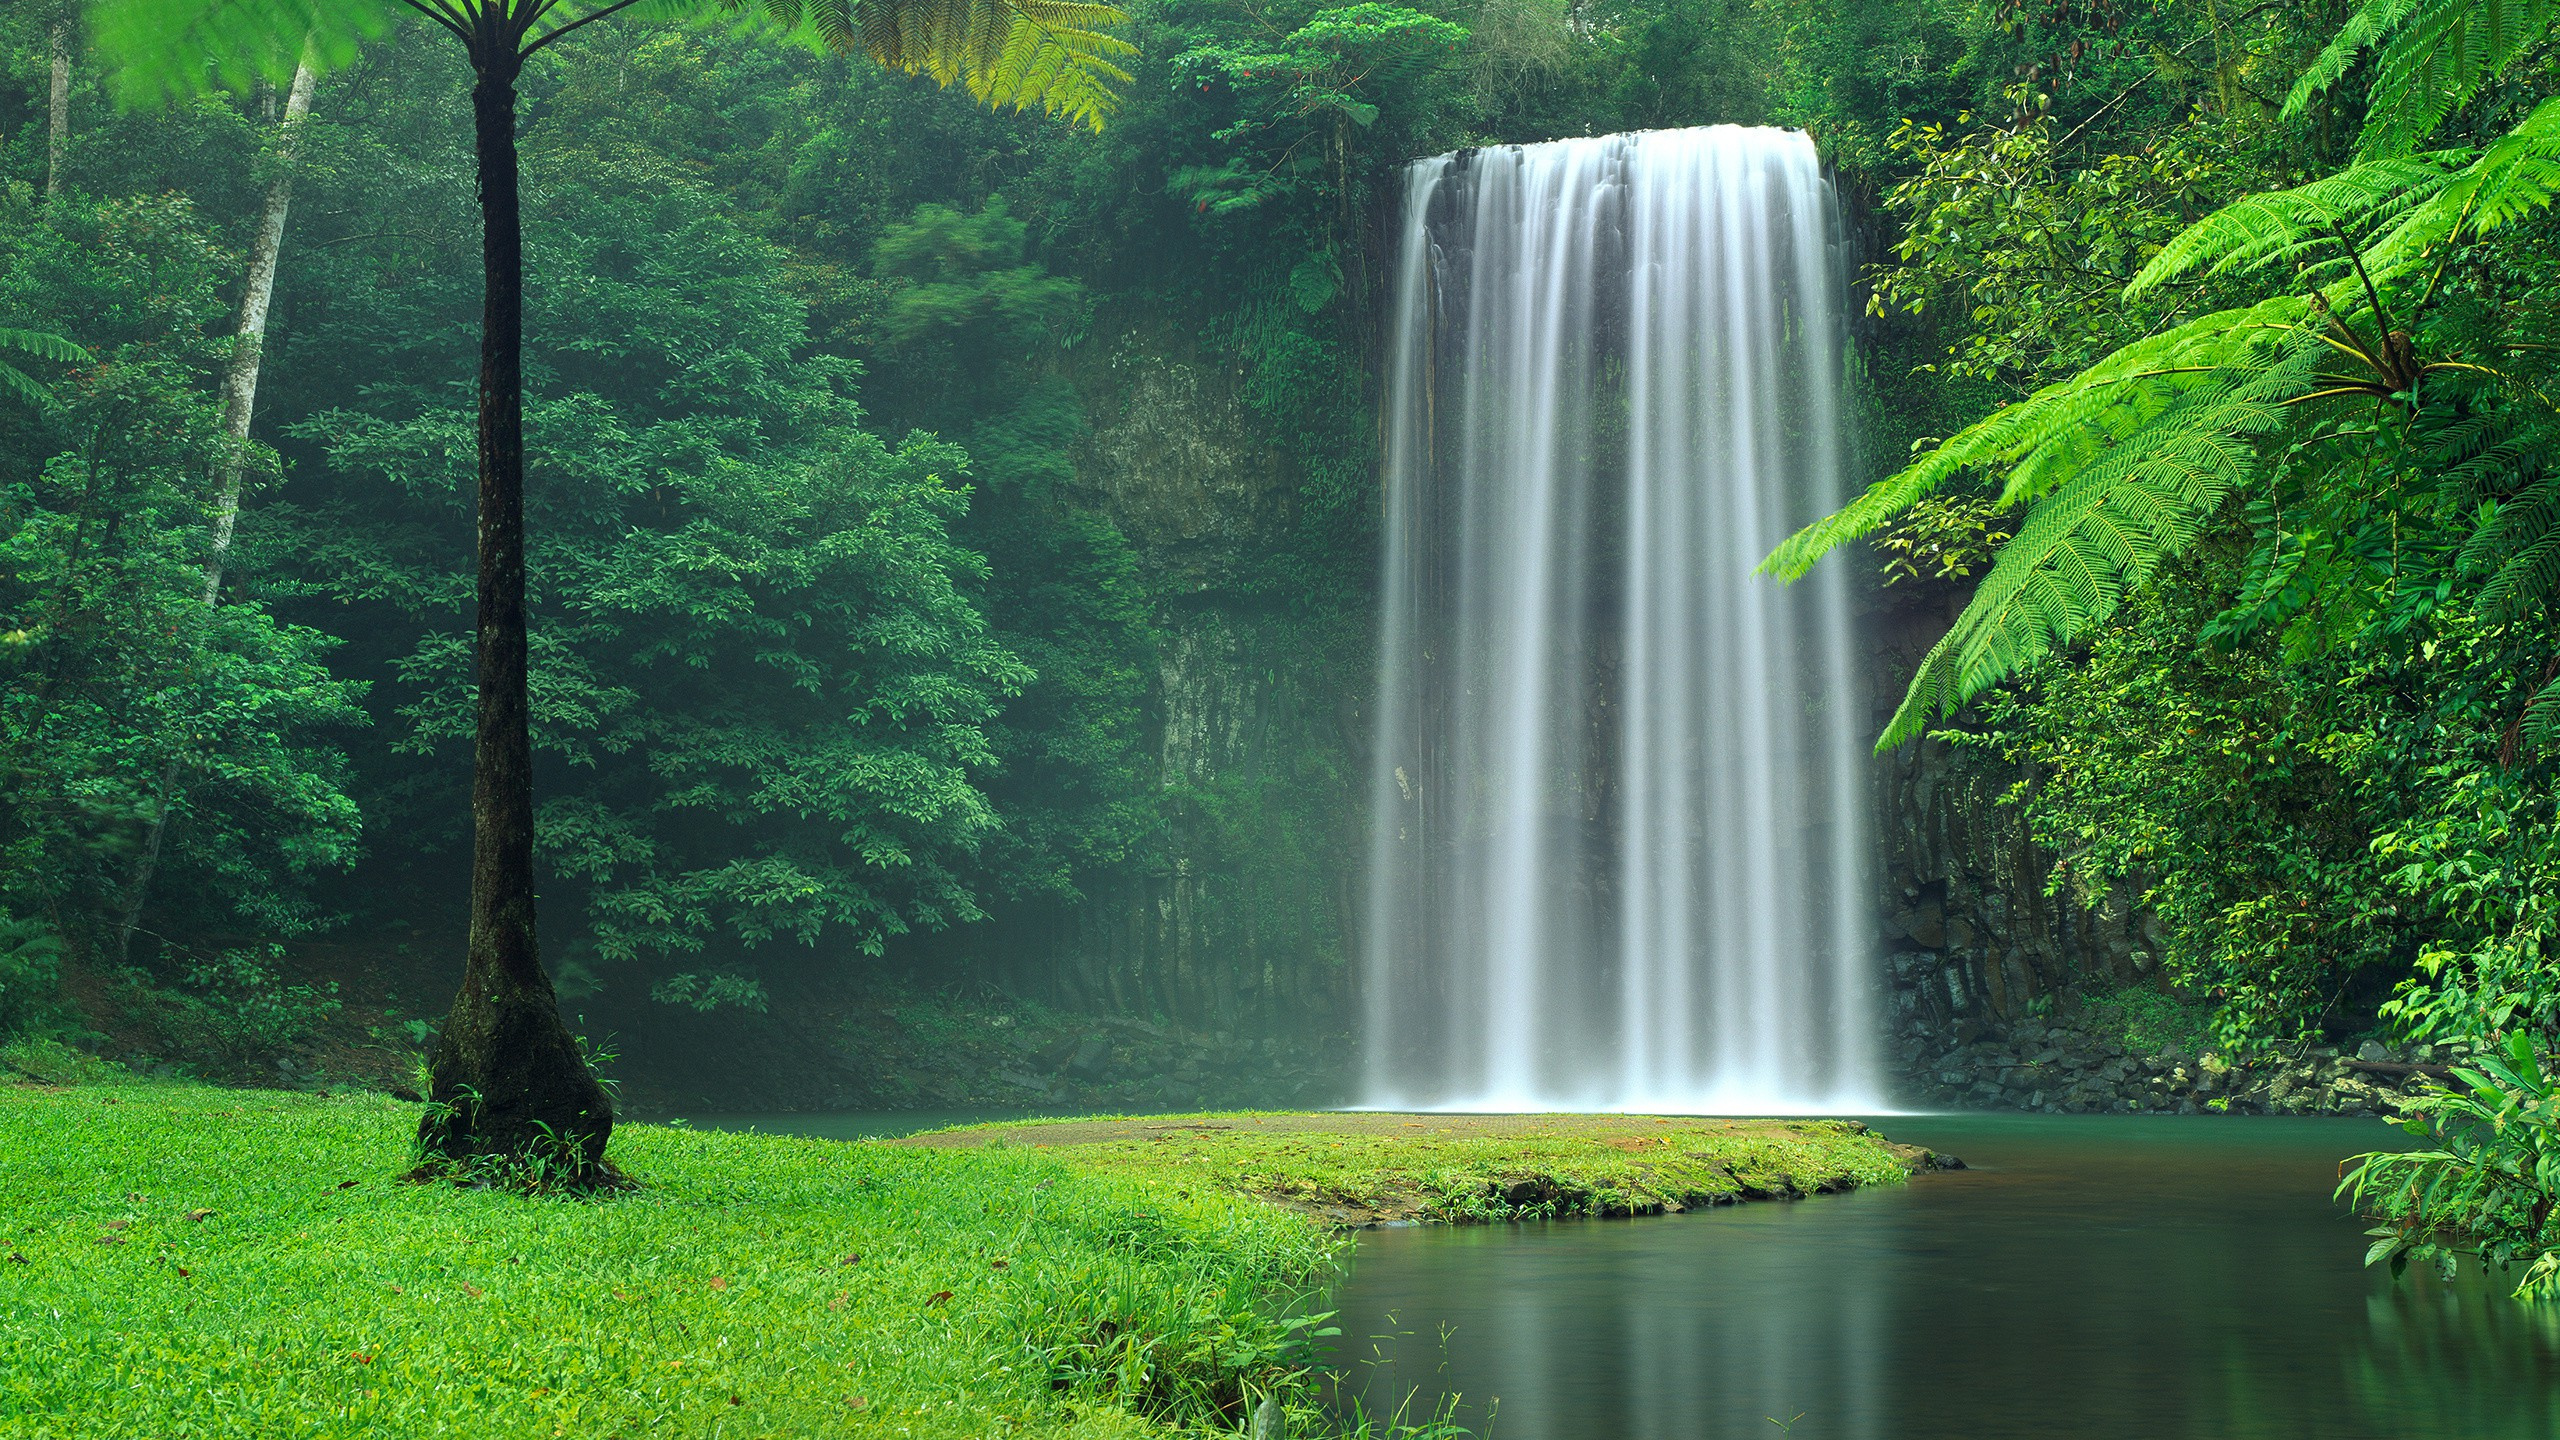 米拉米拉米拉米拉瀑布, 水资源, 性质, 人体内的水, 自然保护区 壁纸 2560x1440 允许